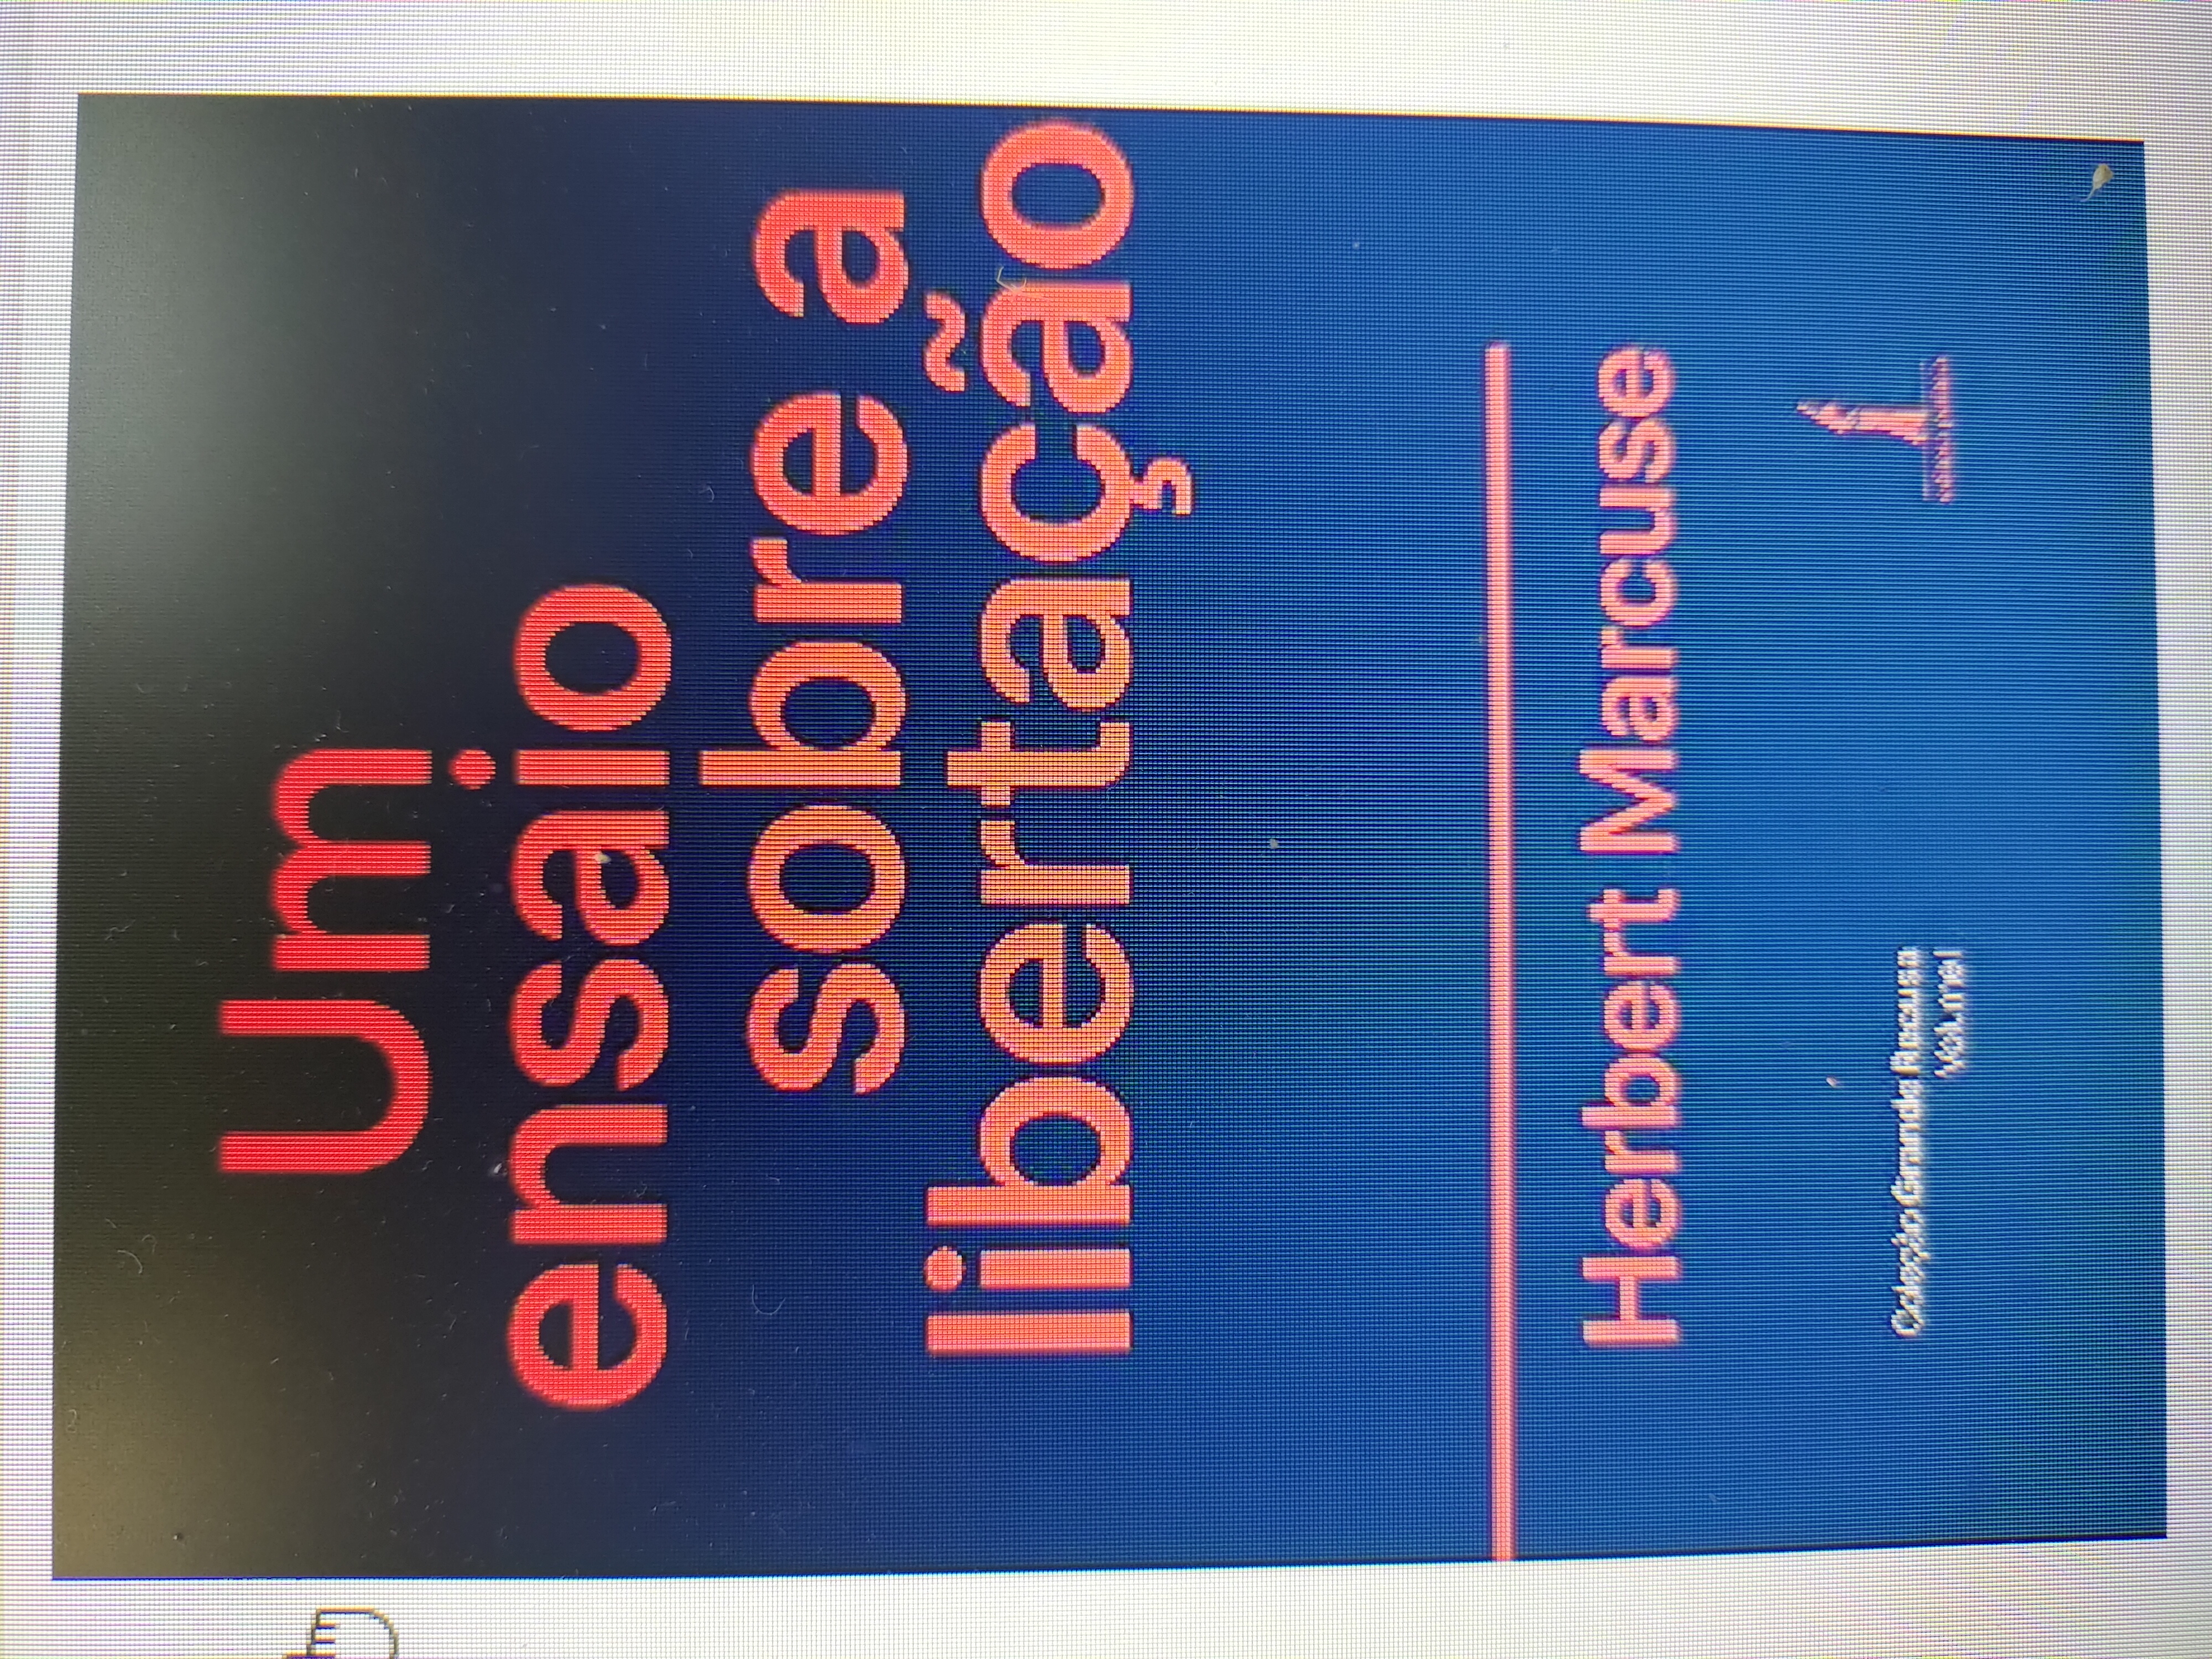 Capa do livro Um ensaio sobre a libertação - Herbert Marcuse.